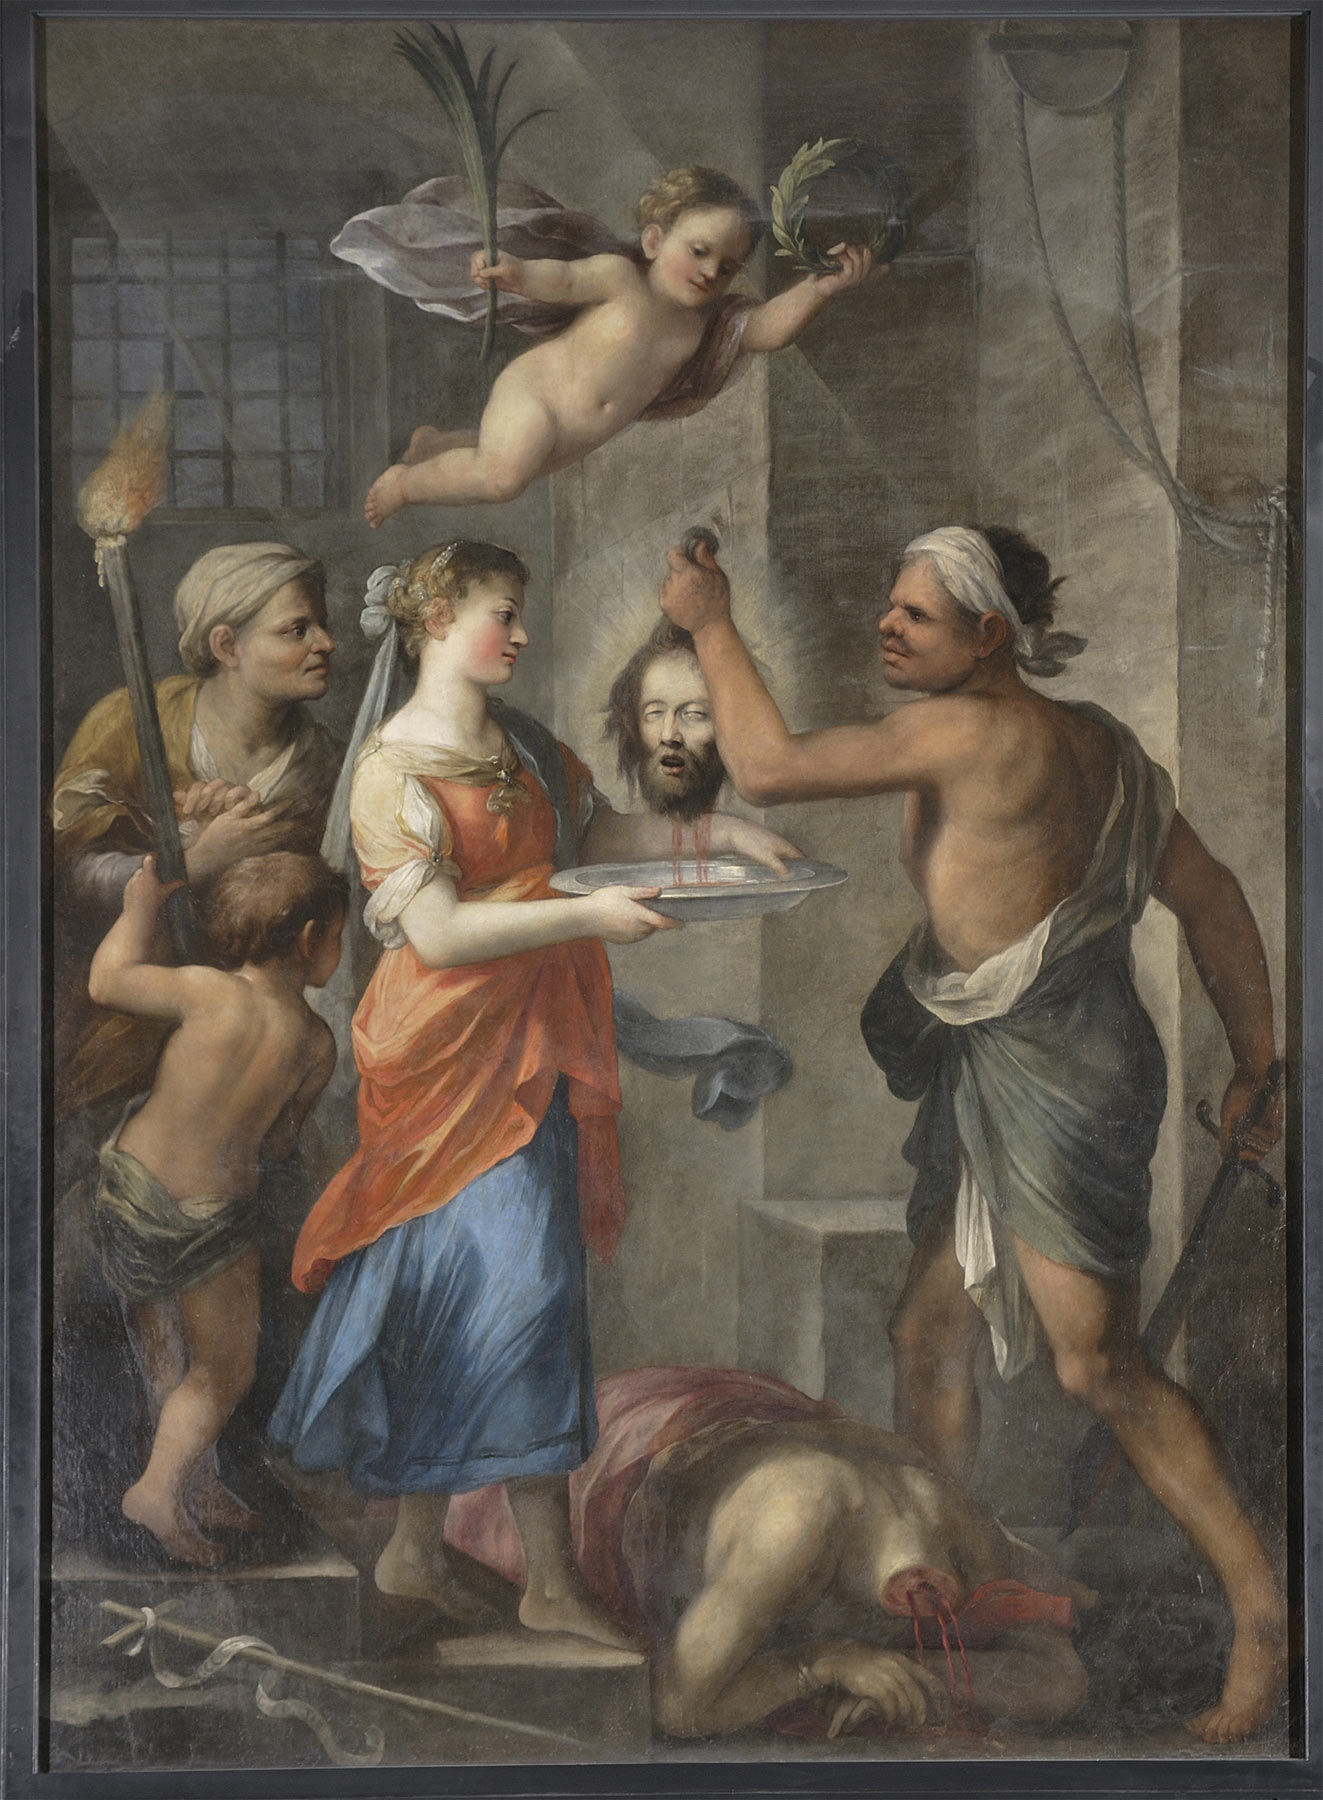 Plautilla Bricci, Stendardo della Compagnia della Misericordia raffigurante la nascita e il martirio di san Giovanni Battista, verso 